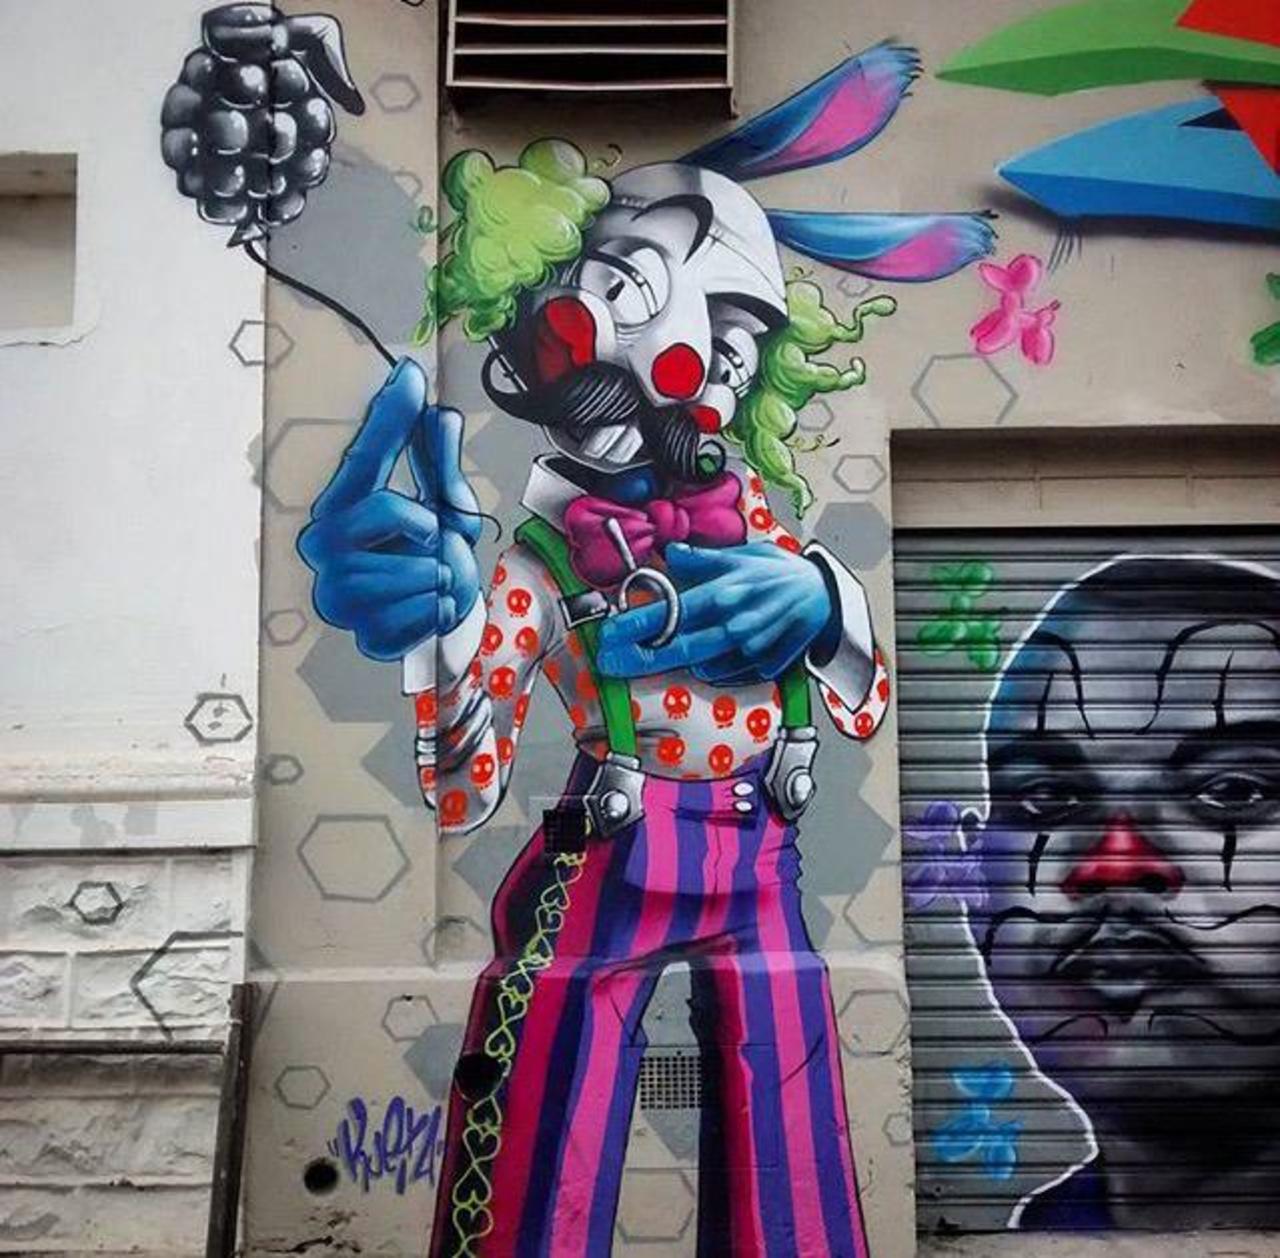 RT @GoogleStreetArt: New Street Art by Karen Kueia 

#art #graffiti #mural #streetart http://t.co/ww1xbzyeIr